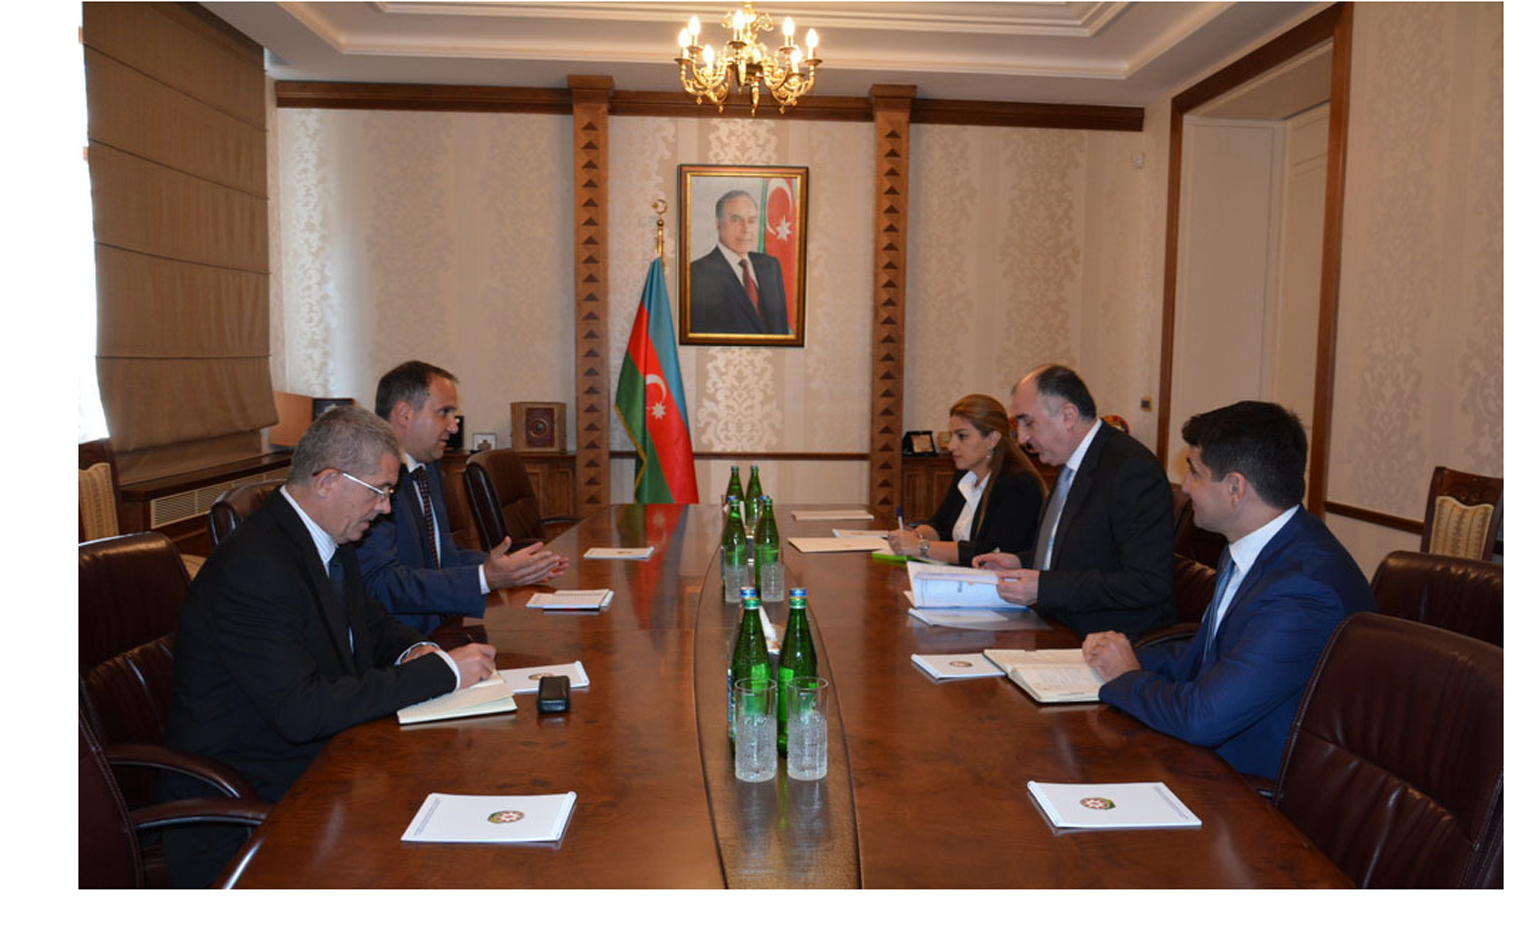 Новый посол Венгрии вручил копиисвоих верительных грамот министру иностранных дел Азербайджана